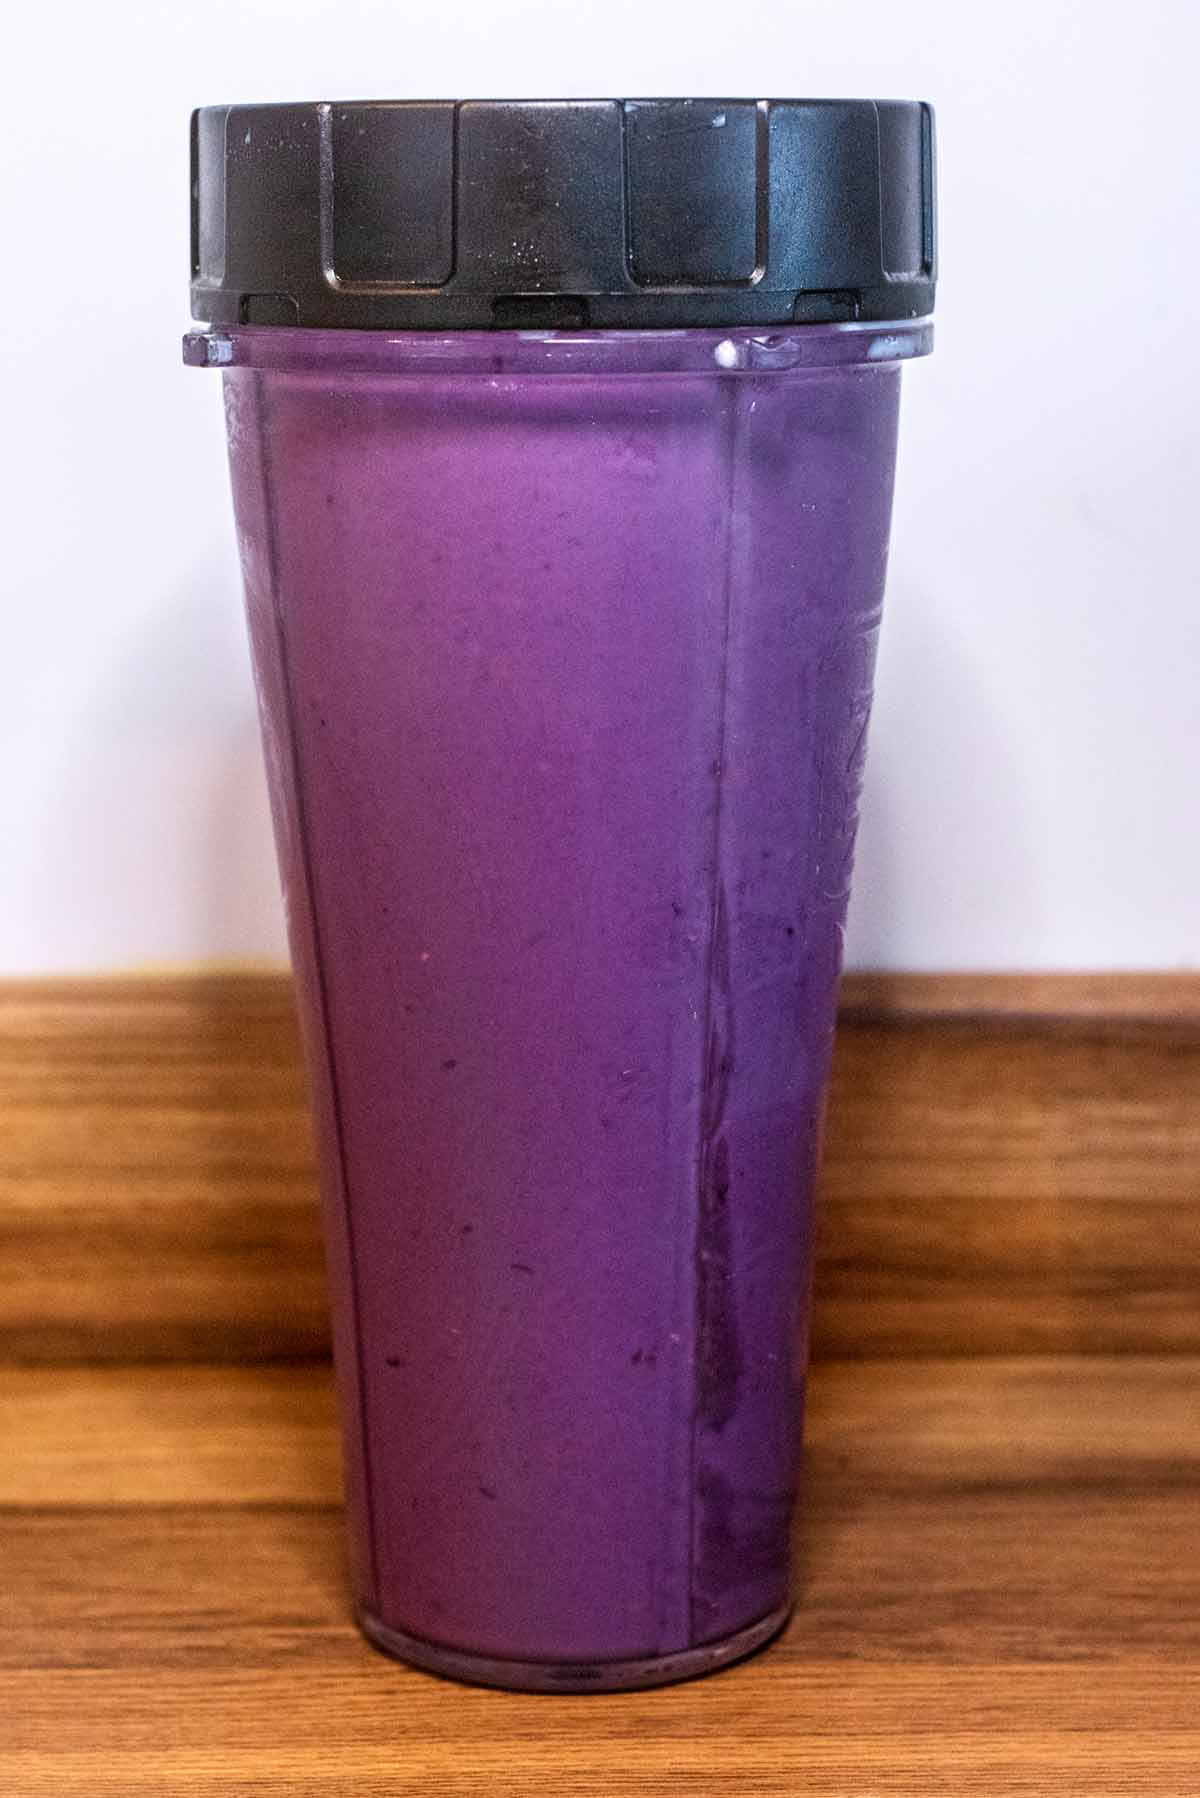 Blended purple smoothie in a blender jug.